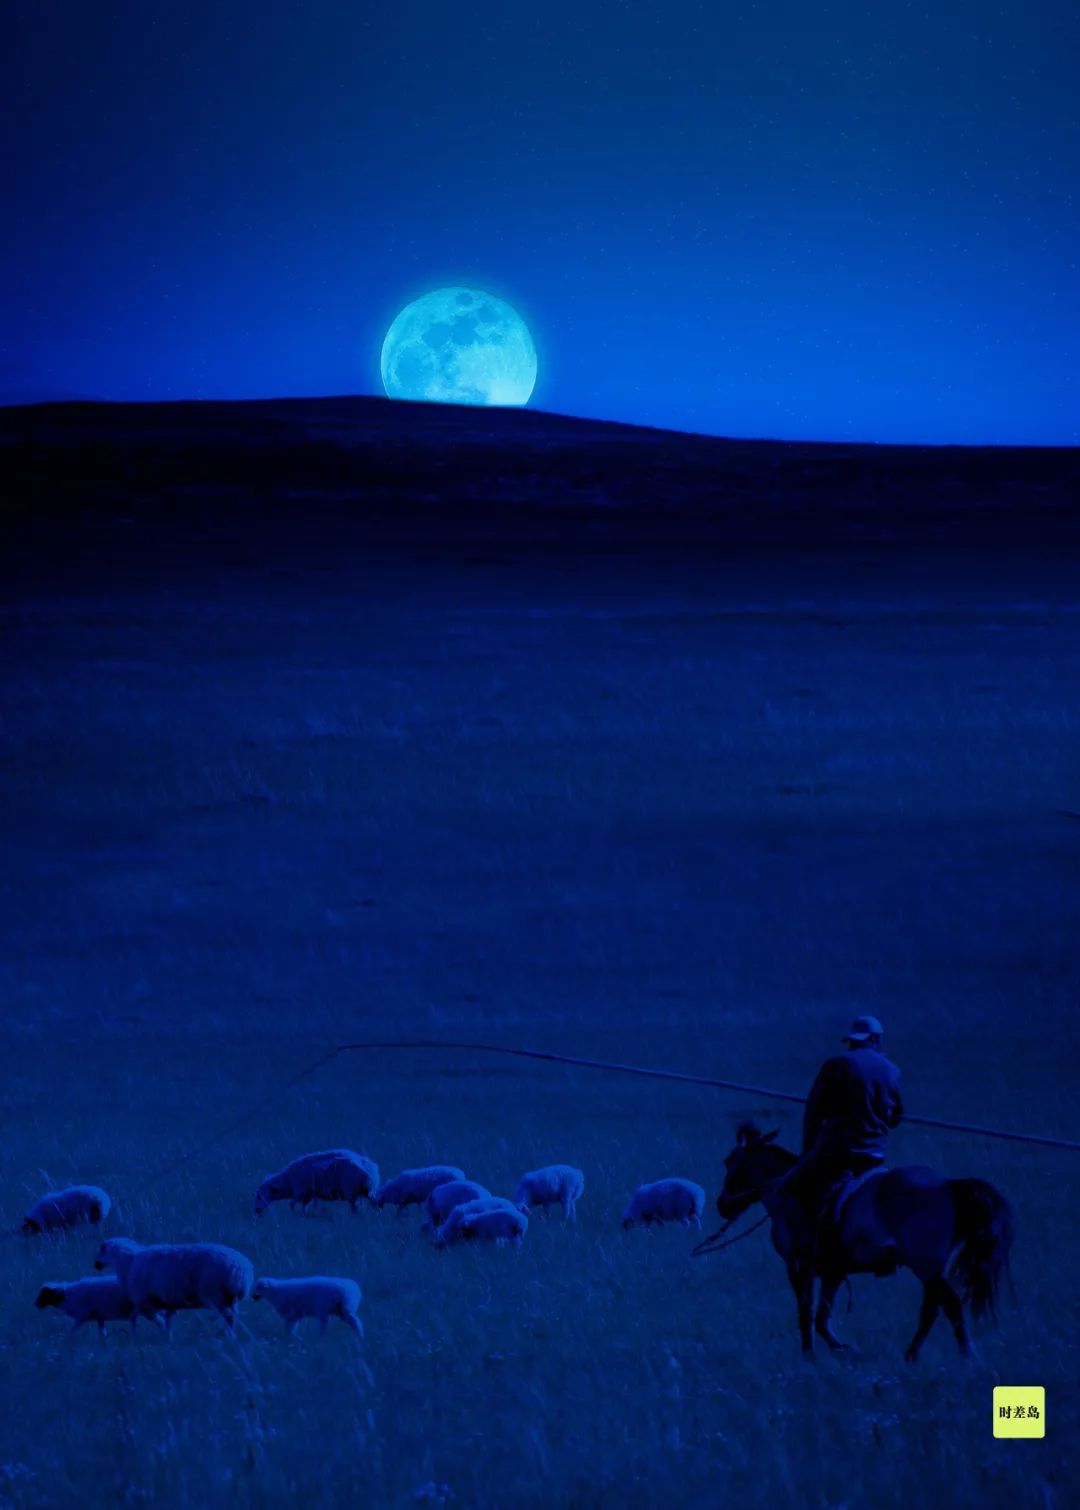 ▼月亮是大草原上唯一的路灯内蒙古草原▼与古人看见的月亮,该最像了!